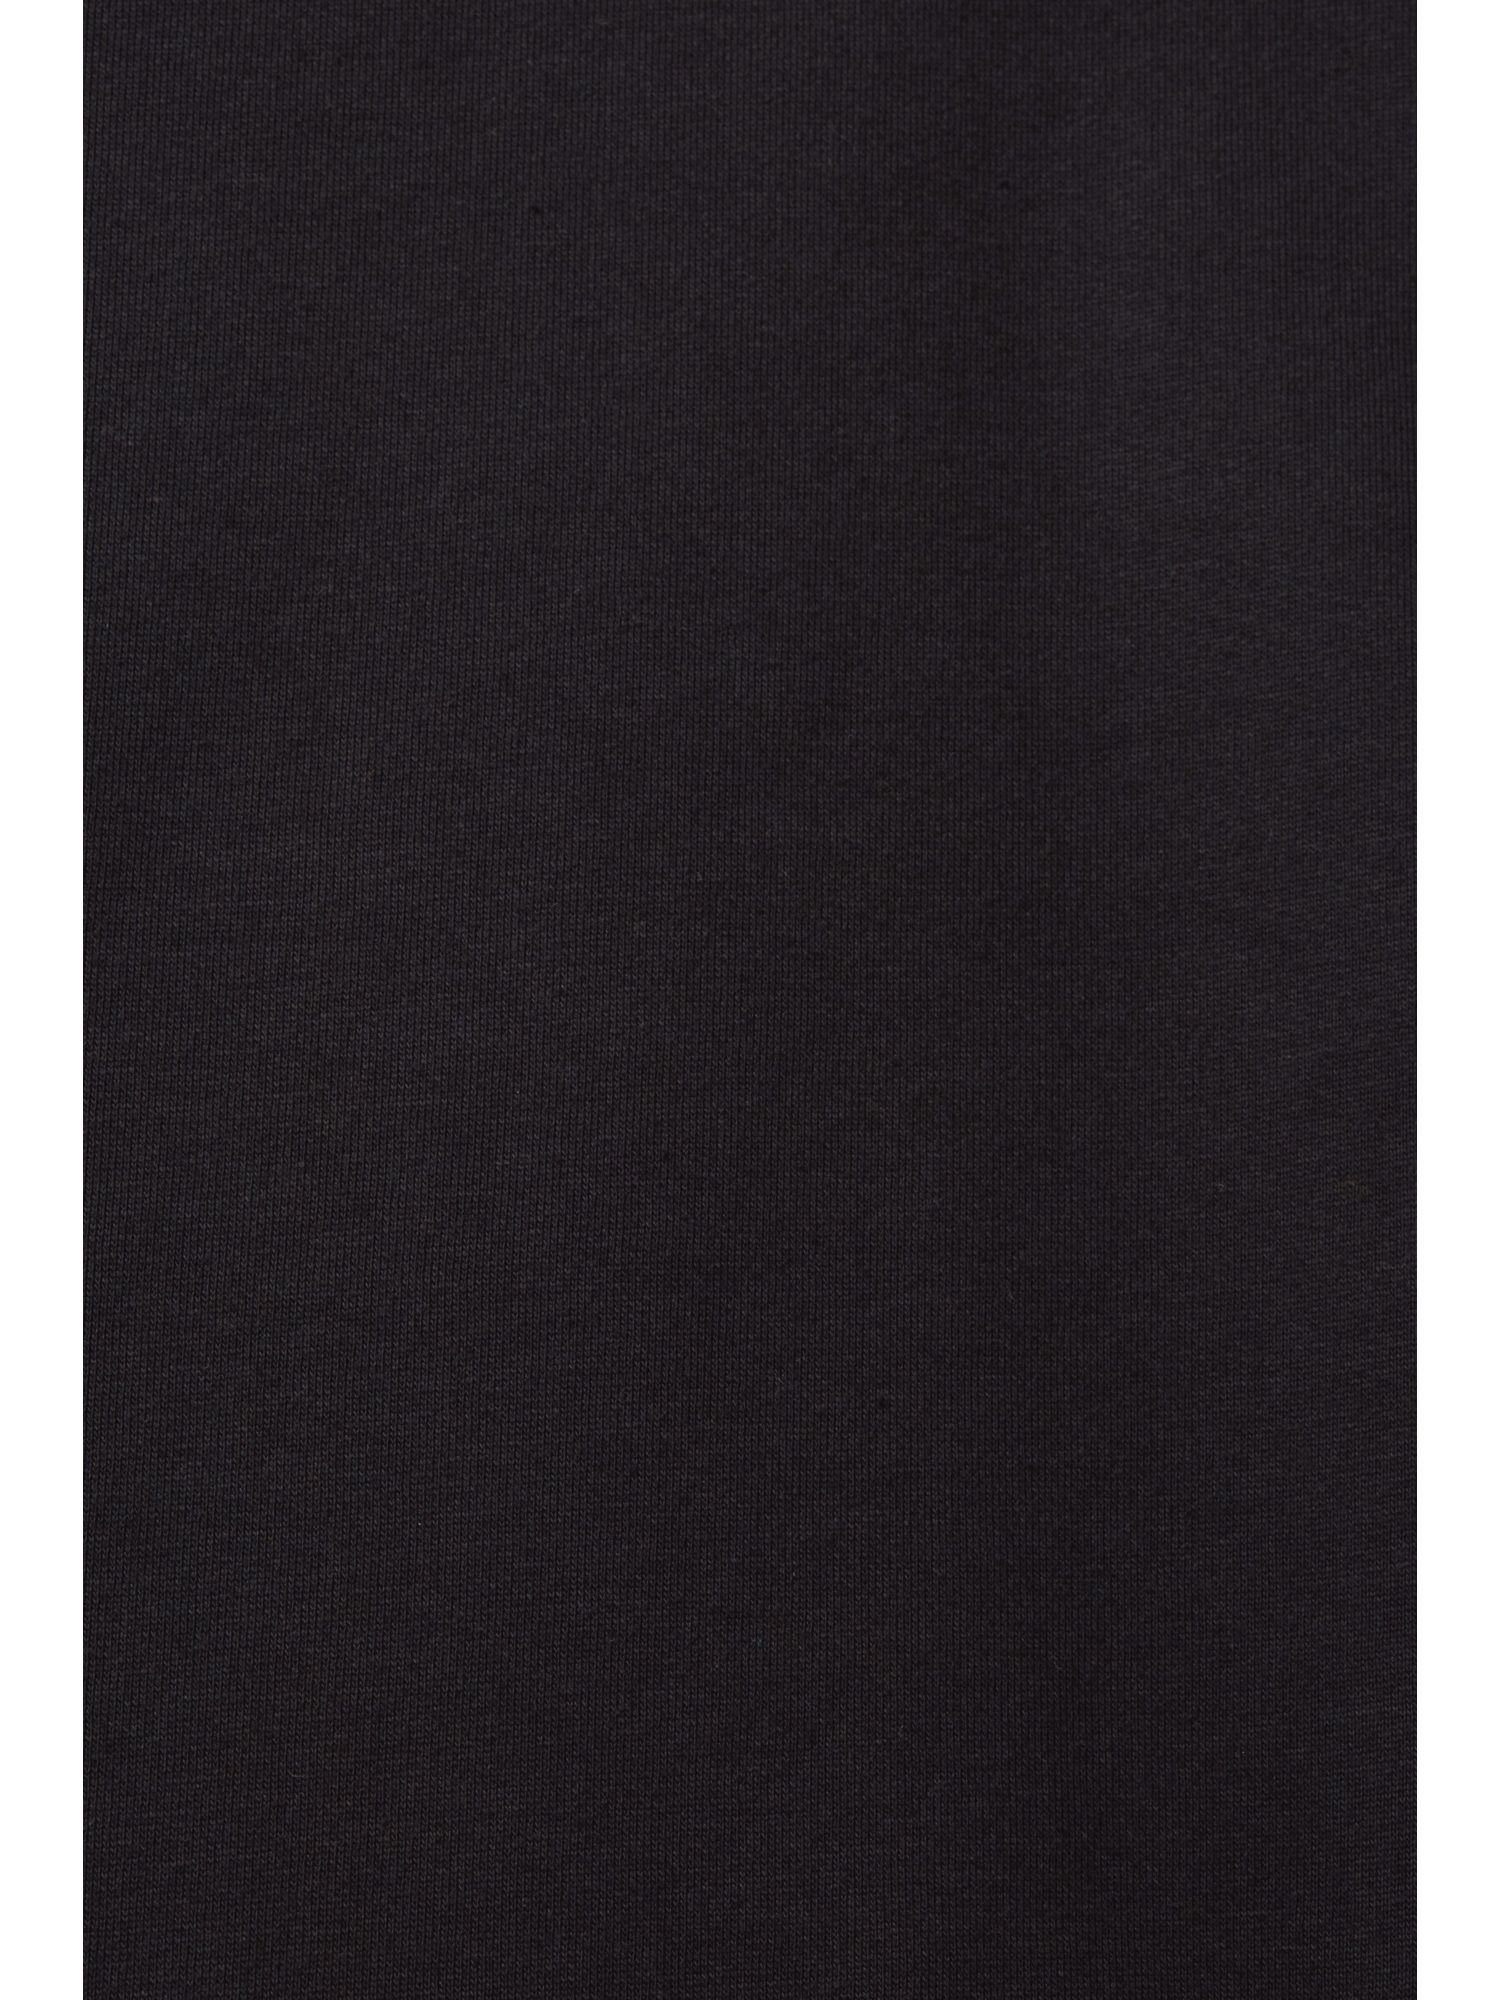 Midikleid BLACK Langes Hoodie-Kleid Esprit